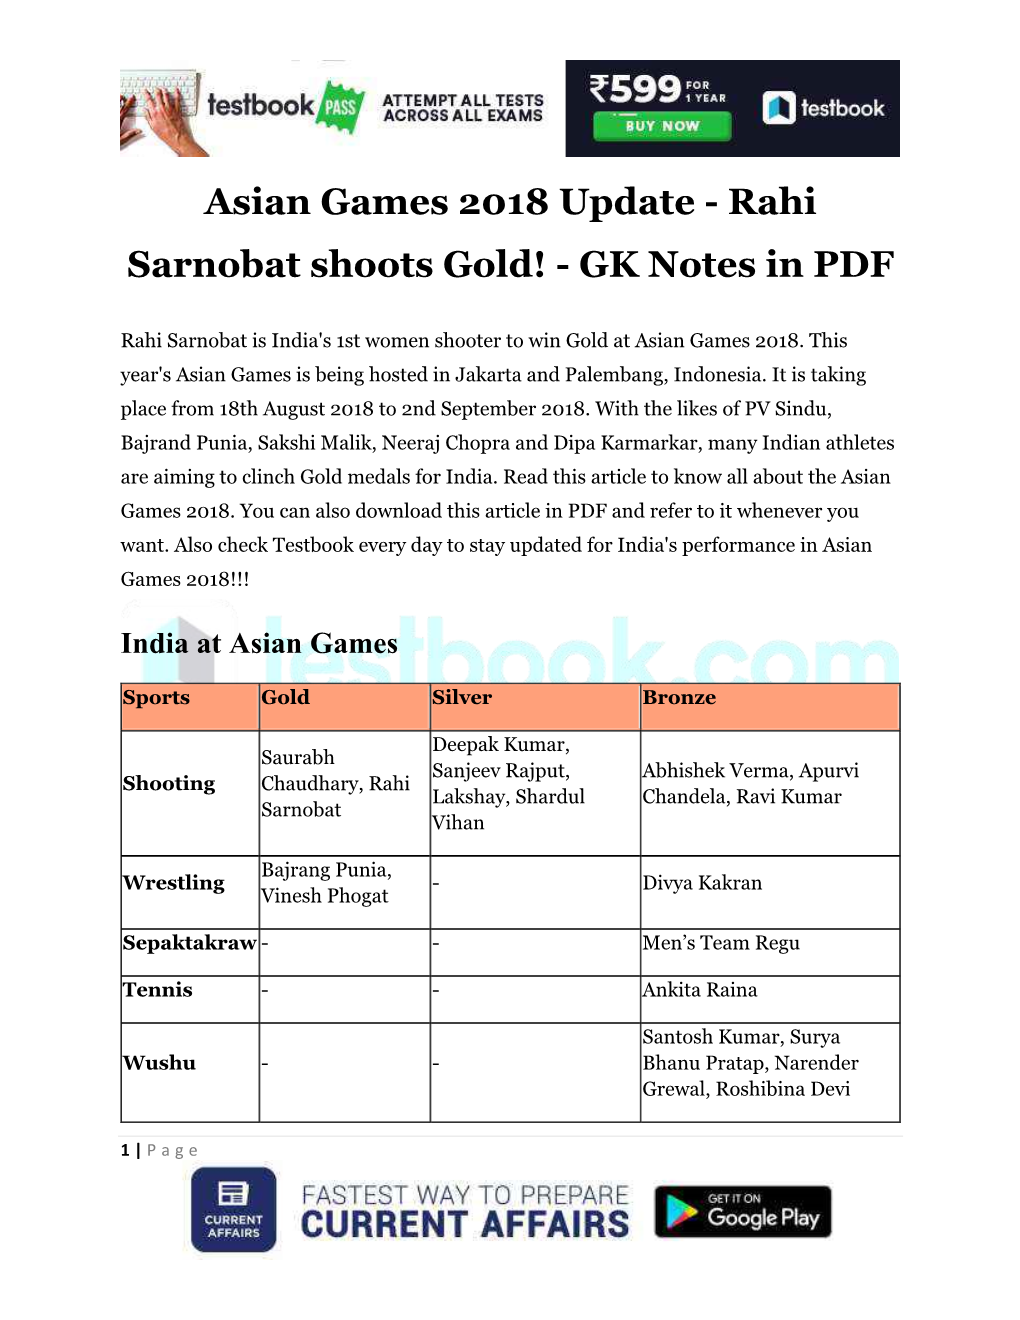 Asian Games 2018 Update - Rahi Sarnobat Shoots Gold! - GK Notes in PDF